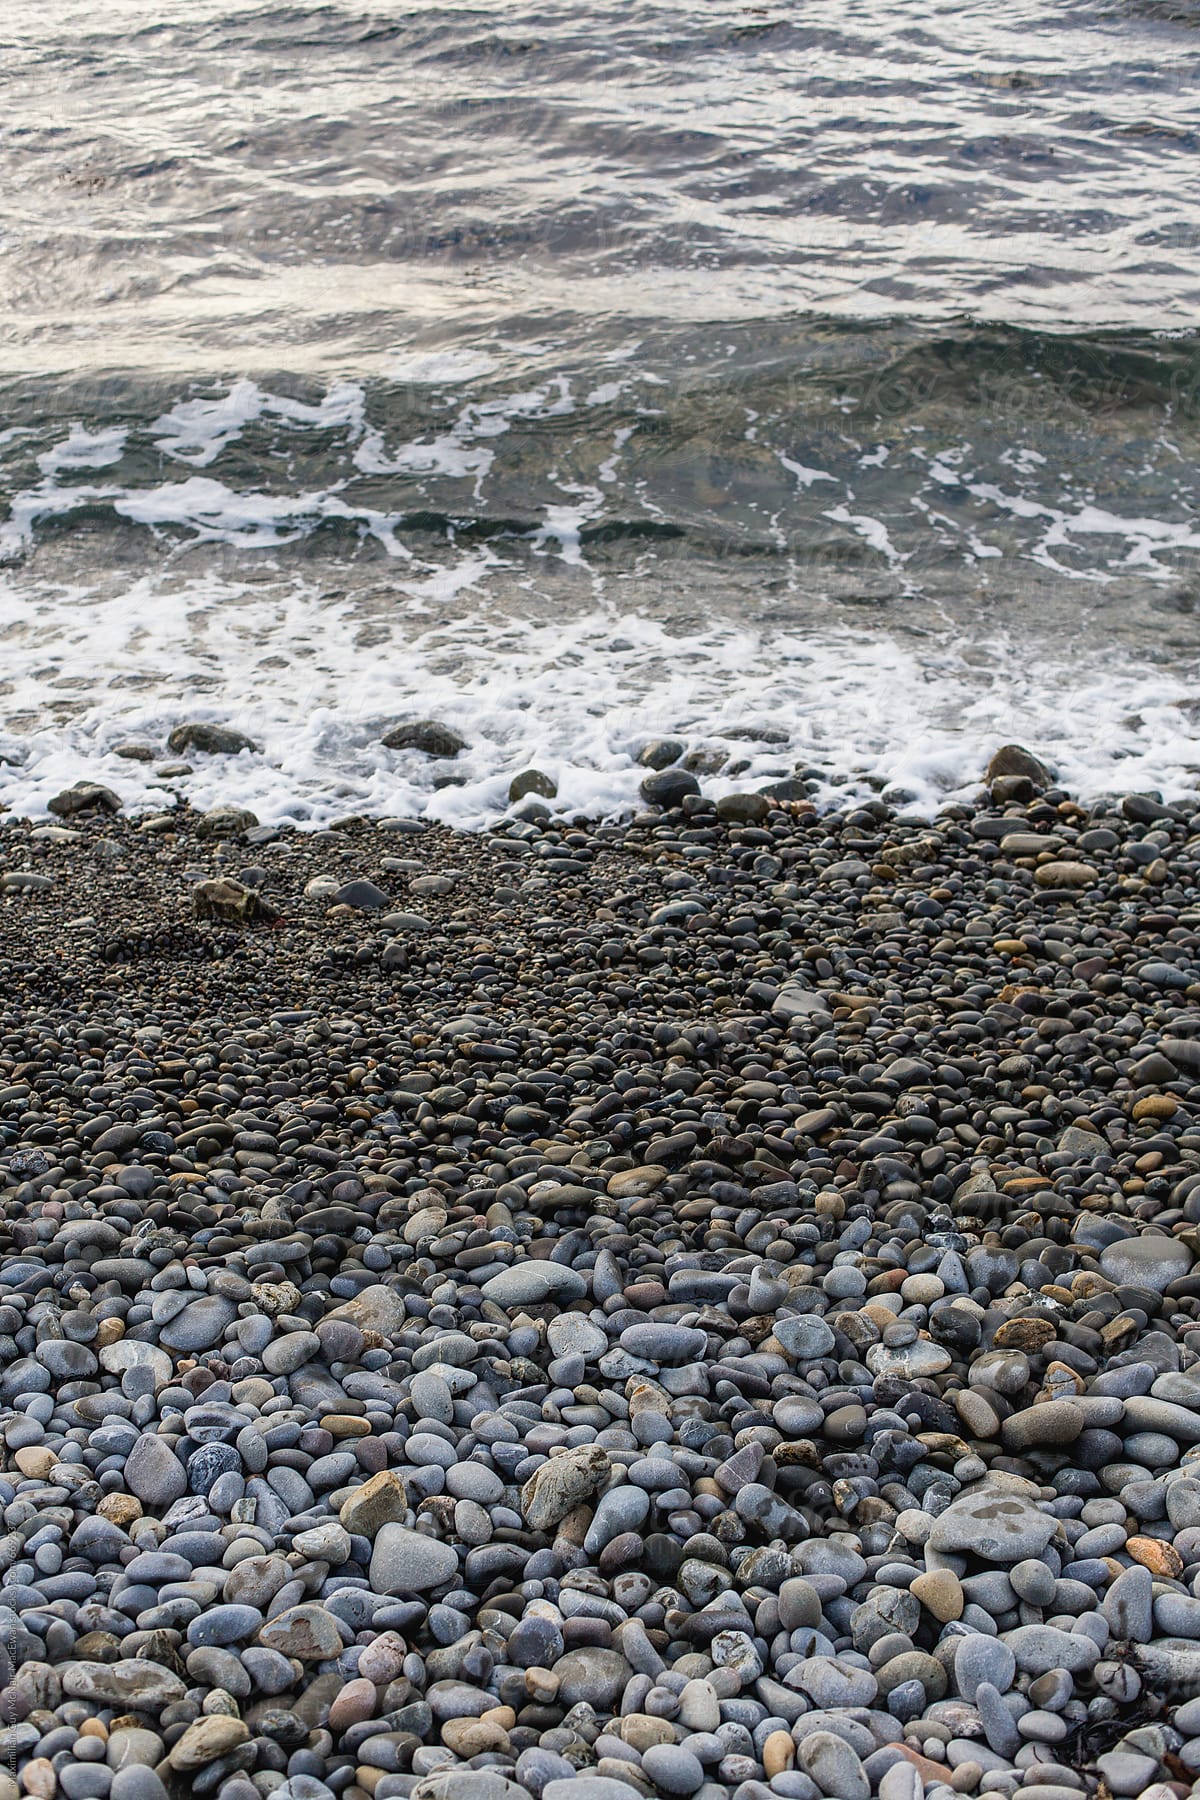 A pebble beach shoreline